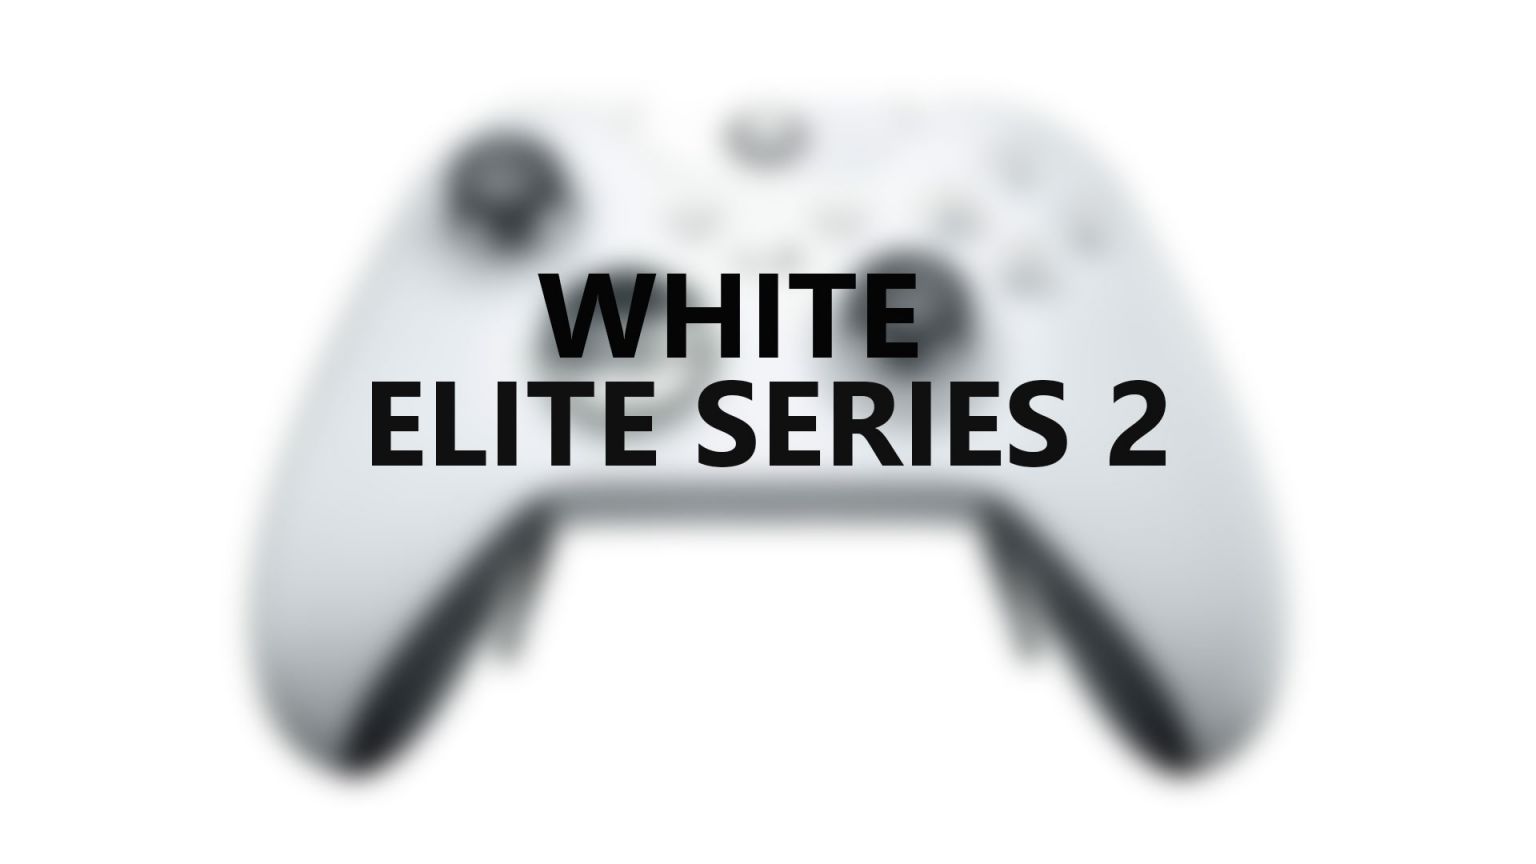 Un usuario ha dado en unos almacenes con el nuevo Xbox White Elite Series 2, este nuevo mando llevaría motivos engomados en negro.